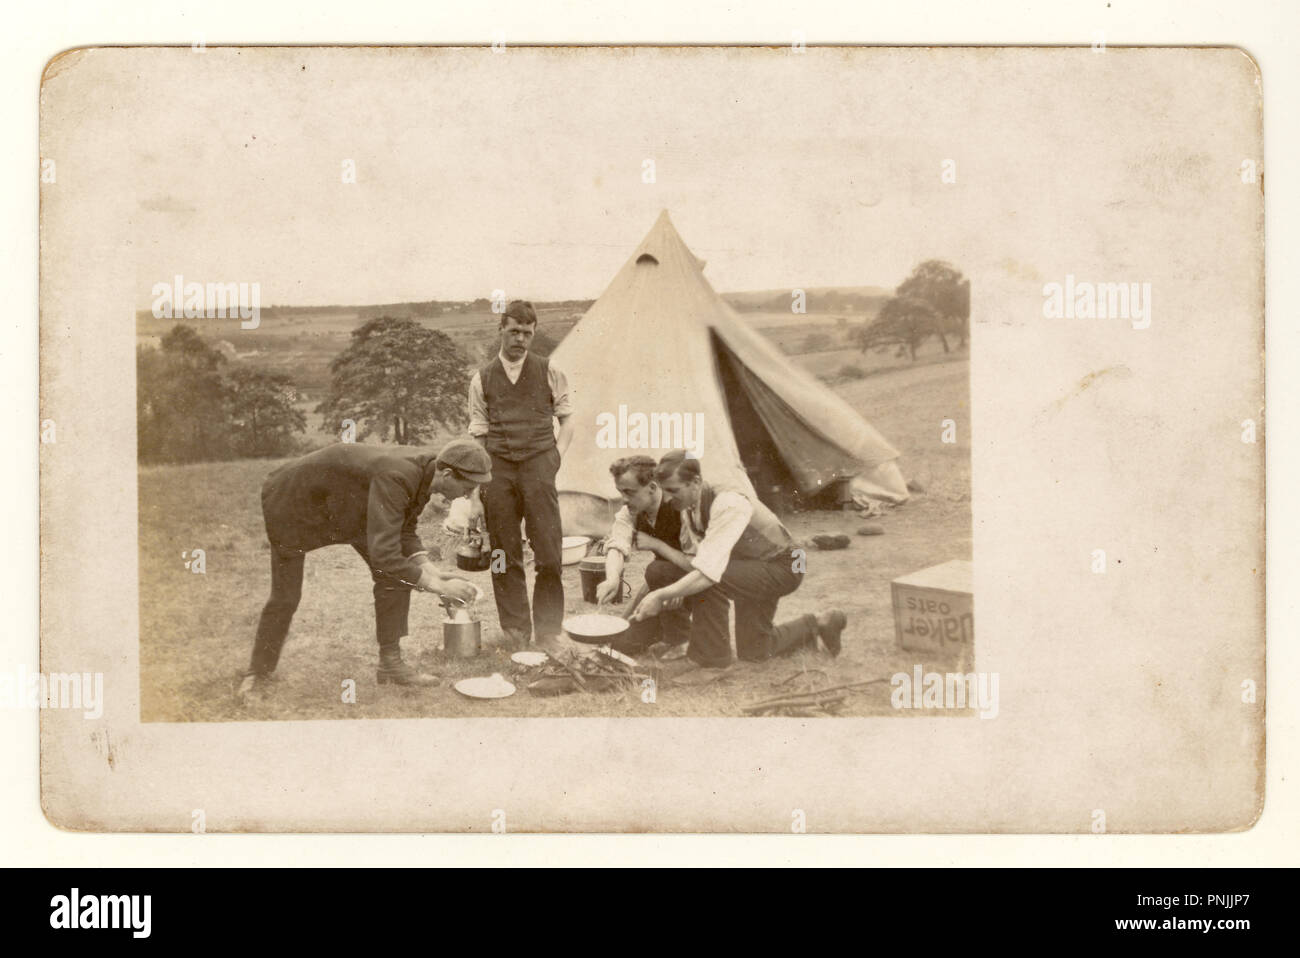 Edwardian Postkarte von jungen Männern Camping in der Natur, Kochen auf offenem fireout außerhalb der Leinwand Zelt, circa 1904, Großbritannien Stockfoto